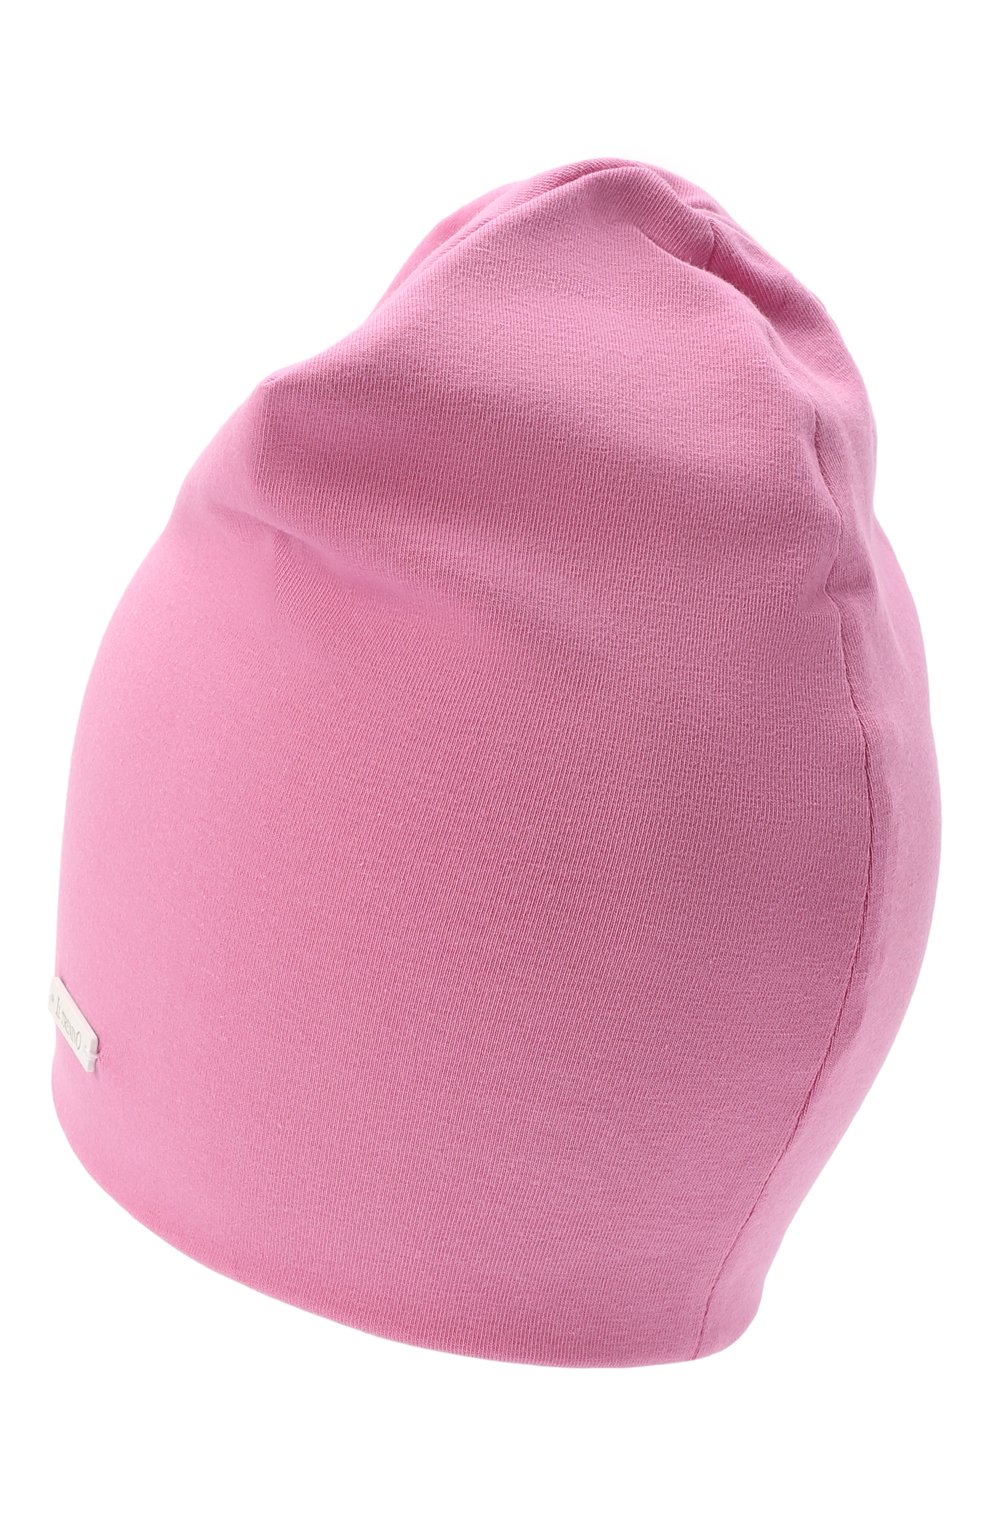 Детского хлопковая шапка IL TRENINO розового цвета, арт. 22 8093 | Фото 2 (Материал: Текстиль, Хлопок)